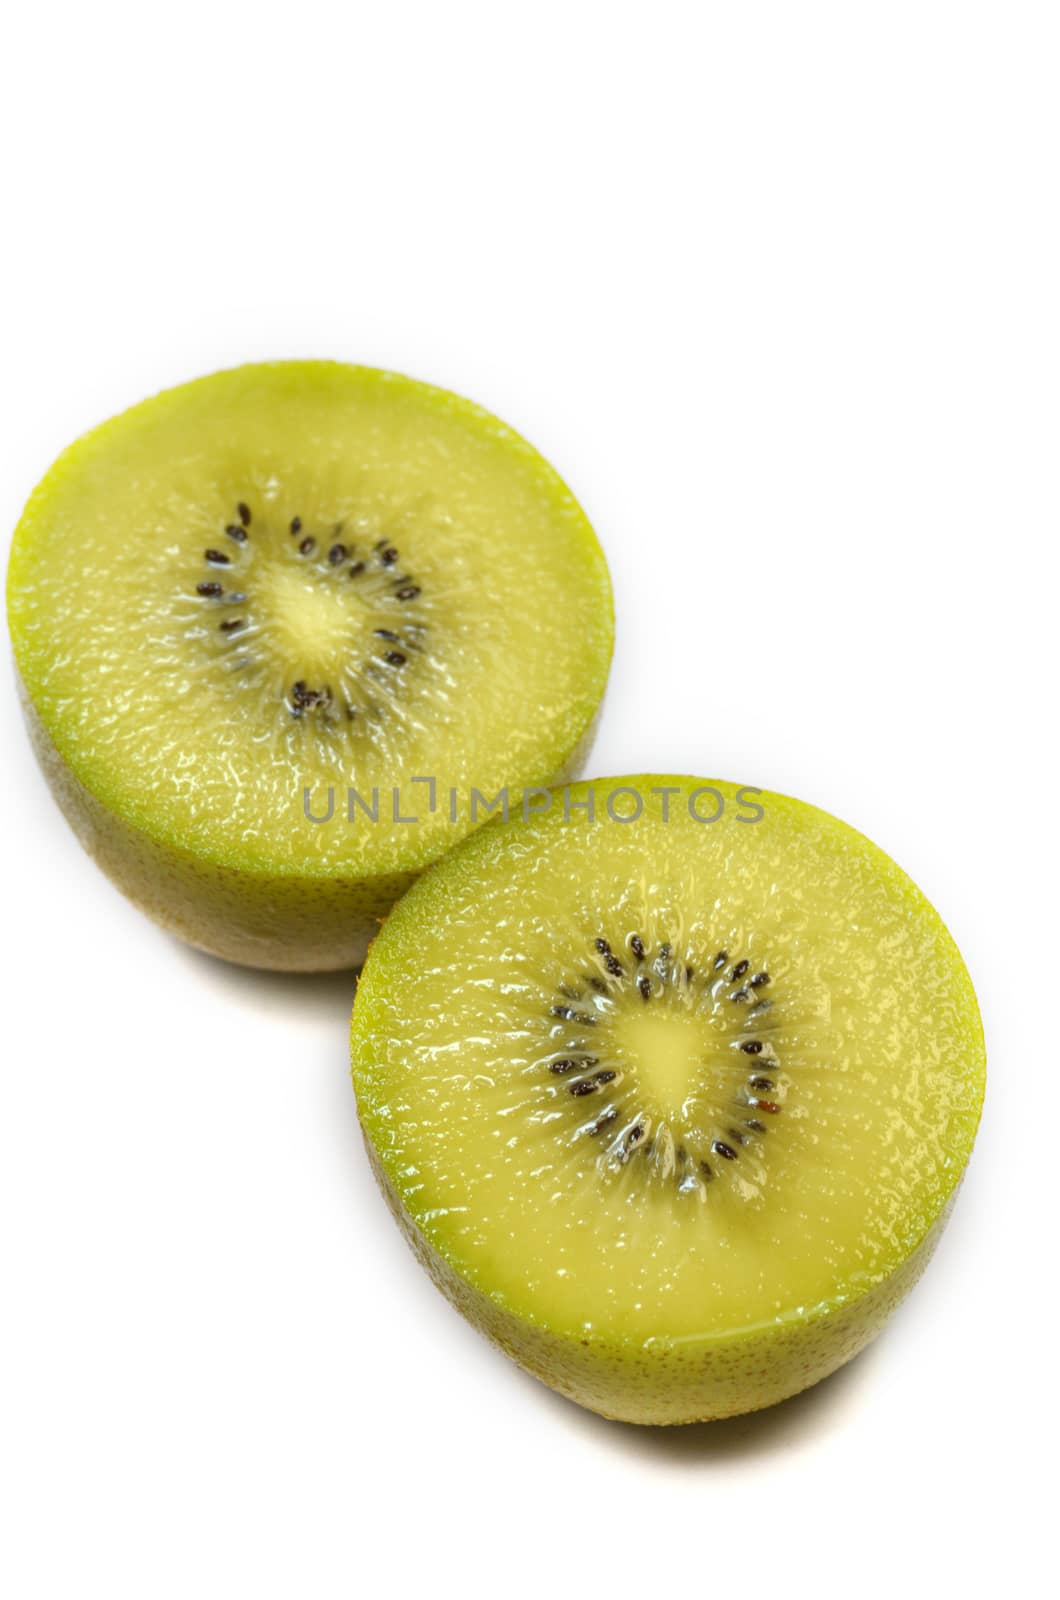 Yellow kiwi fruit on a white background